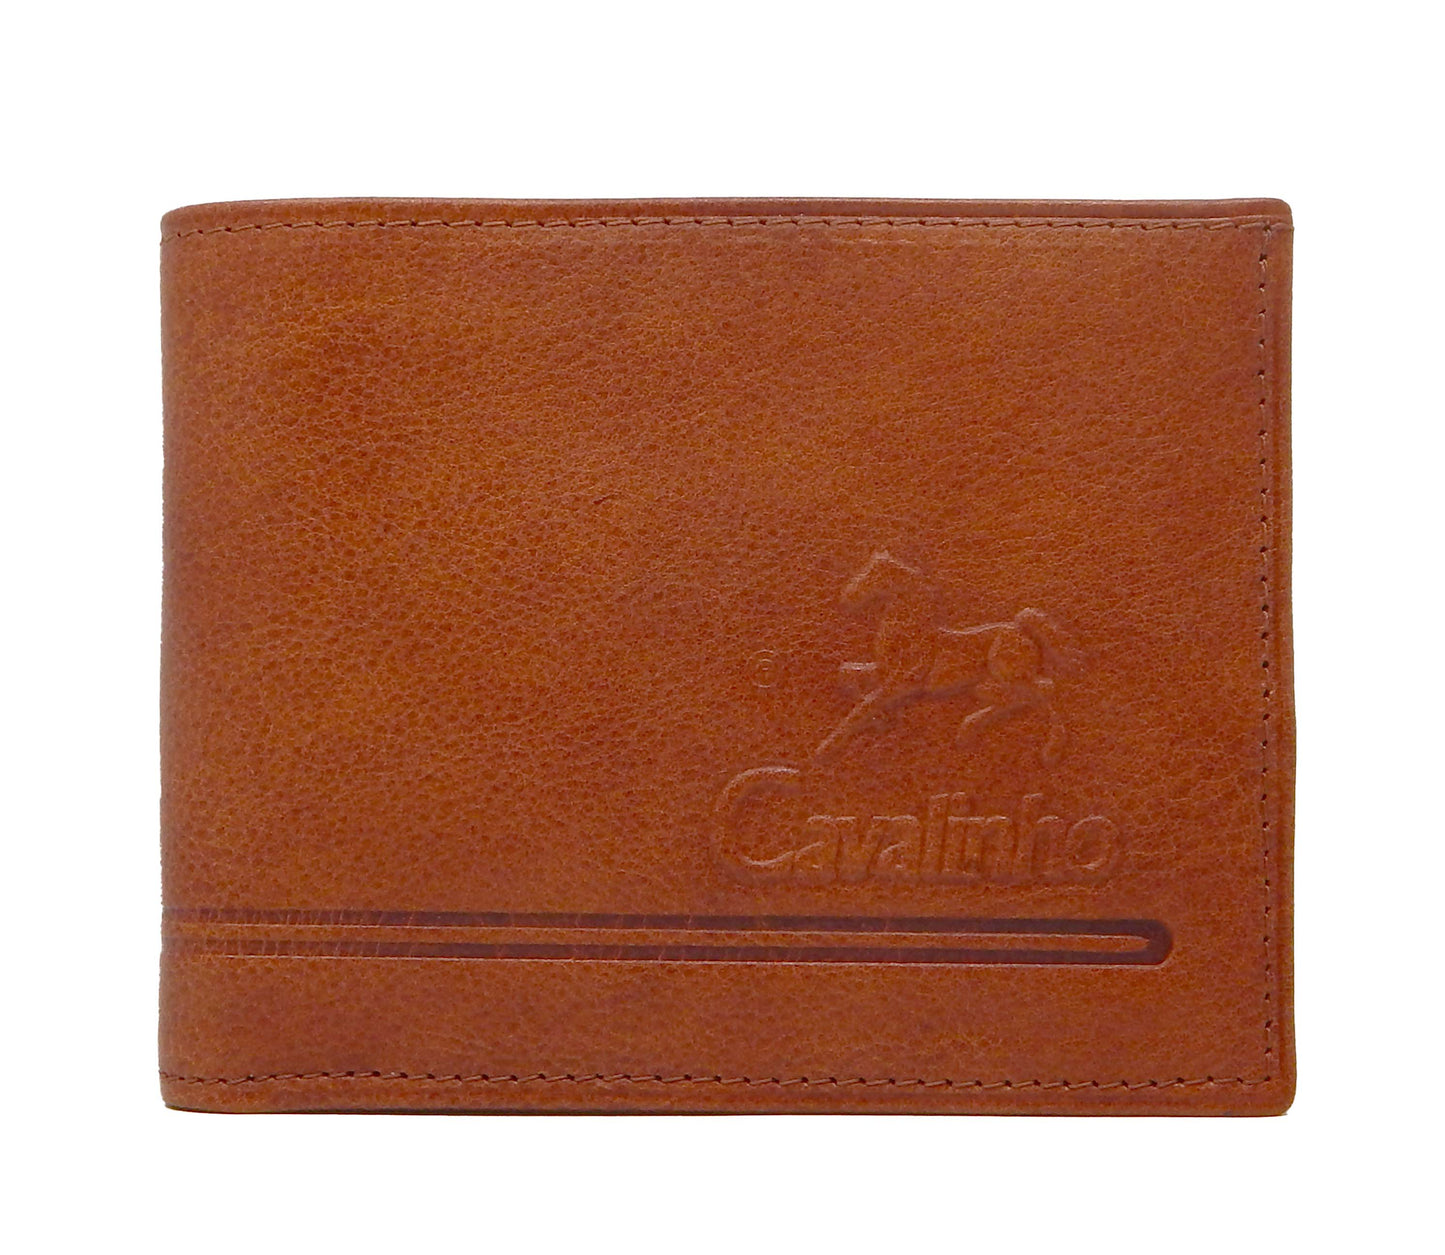 Cavalinho Men's Bifold Leather Wallet - SaddleBrown - 28160512.13.99_1